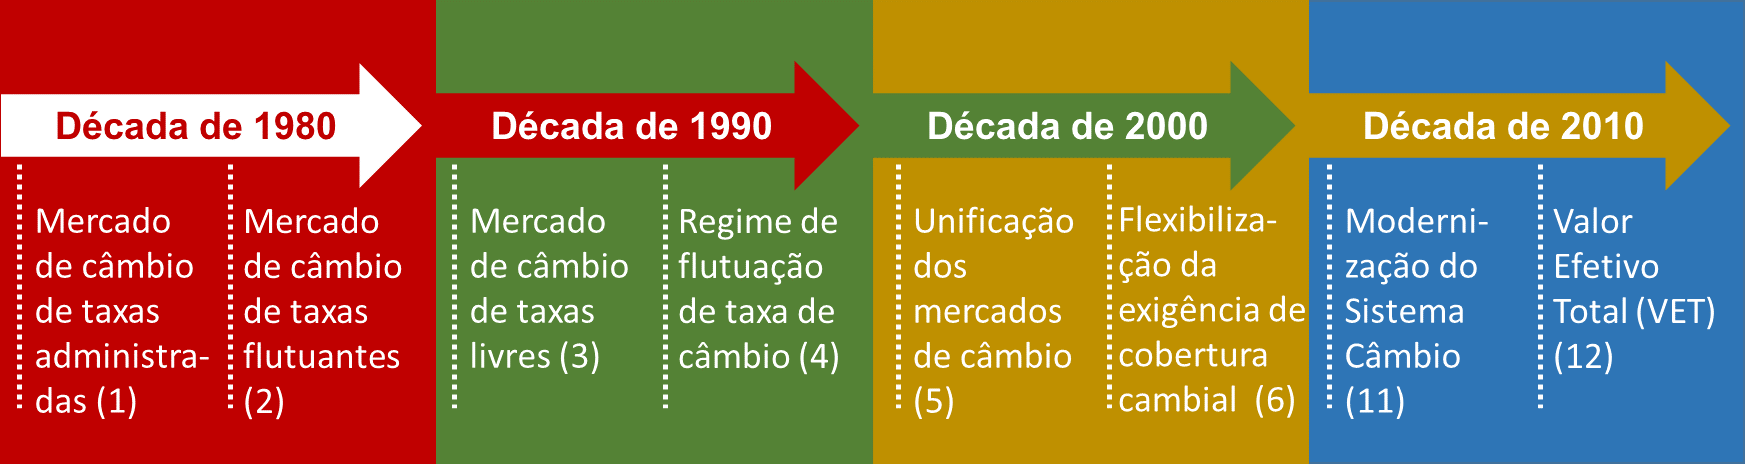 Mercado de Câmbio no Brasil Evolução Histórica Década de 1980 Controle cambial rígido e monopólio de câmbio. Limites e vedações nas vendas de moeda estrangeira pelos bancos.